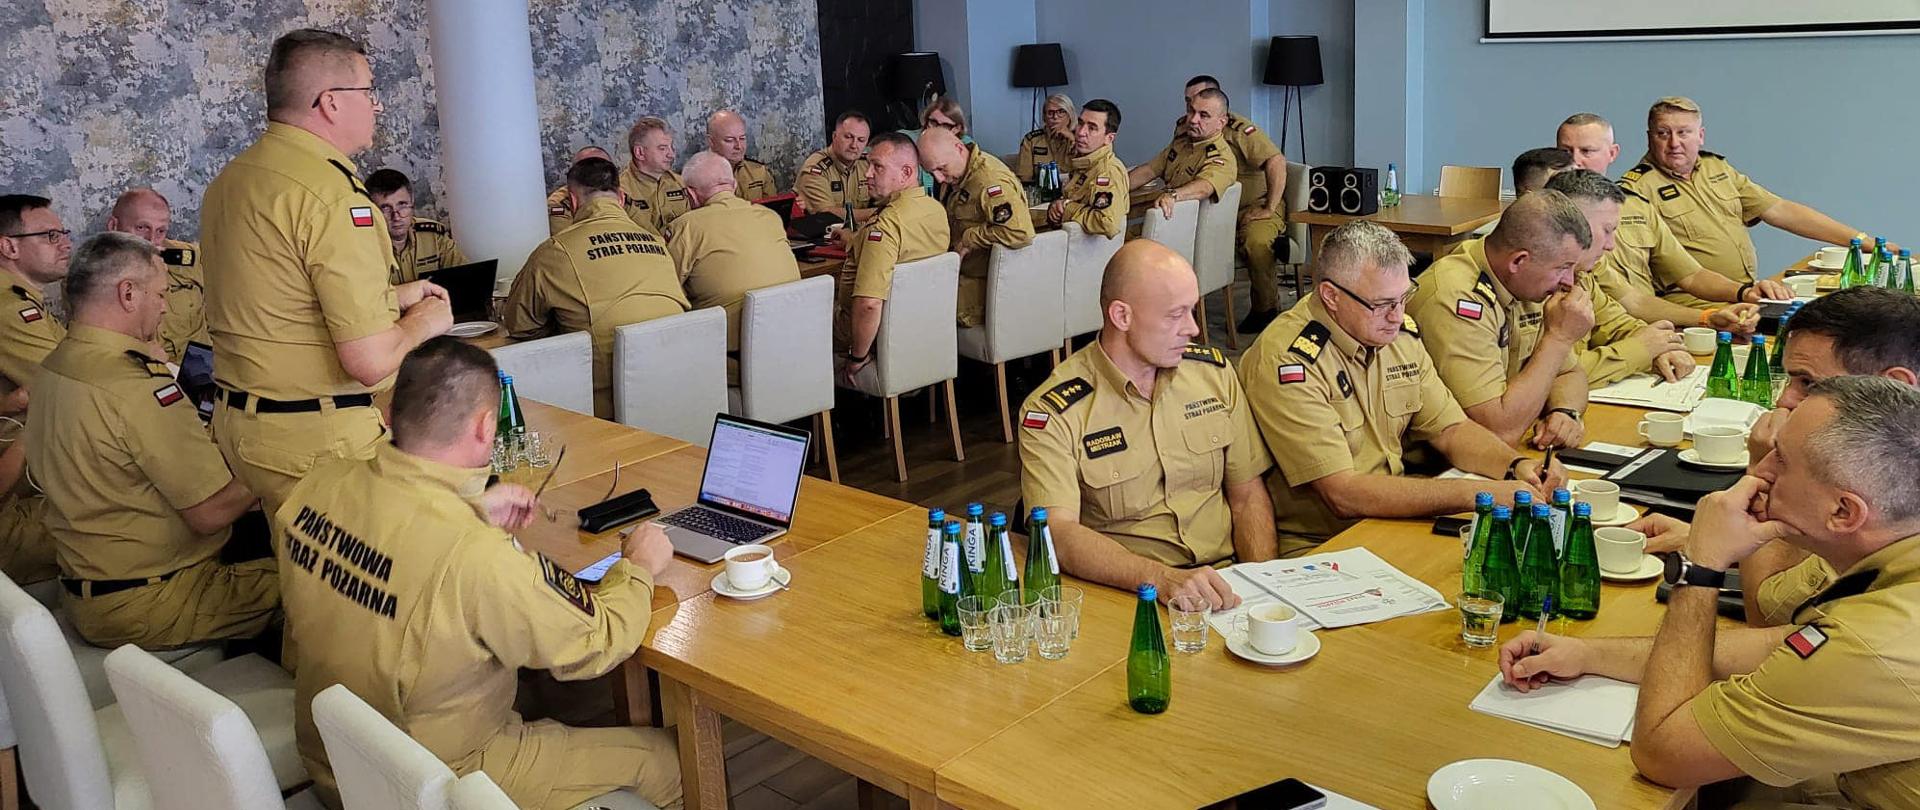 Grupa funkcjonariuszy PSP w umundurowaniu służbowym siedzi przy stołach podczas narady , stół ustawiony w kształcie litery U, w jego głównej części na stojąco przemawia zastępca komendanta głównego PSP nadbryg. Krzysztof Hejduk